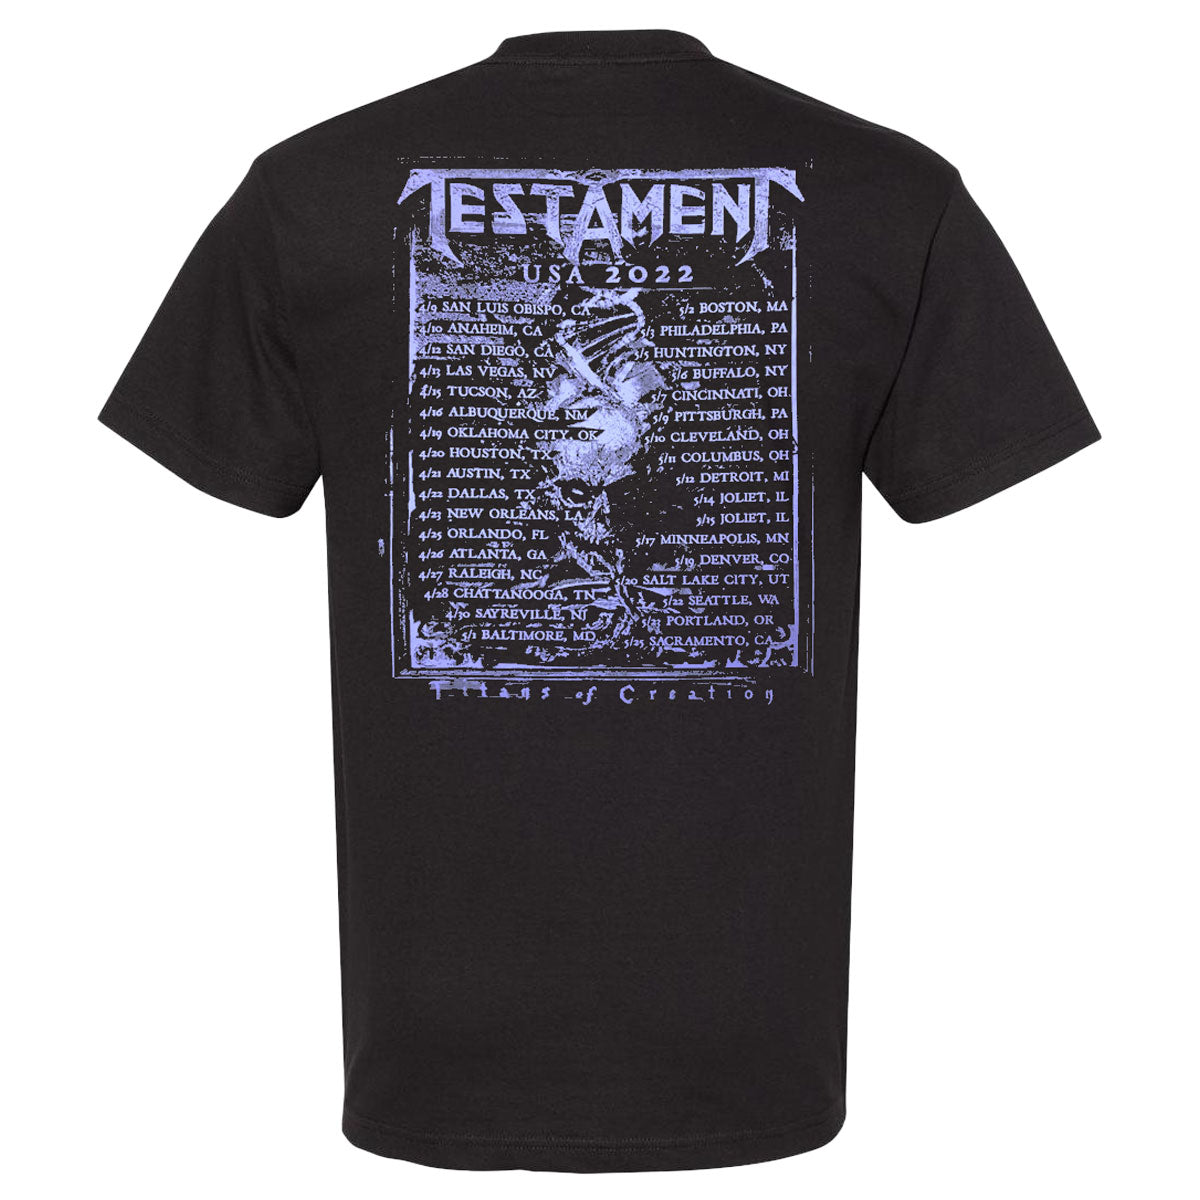 Titans of Creation Tour 2022 T-Shirt